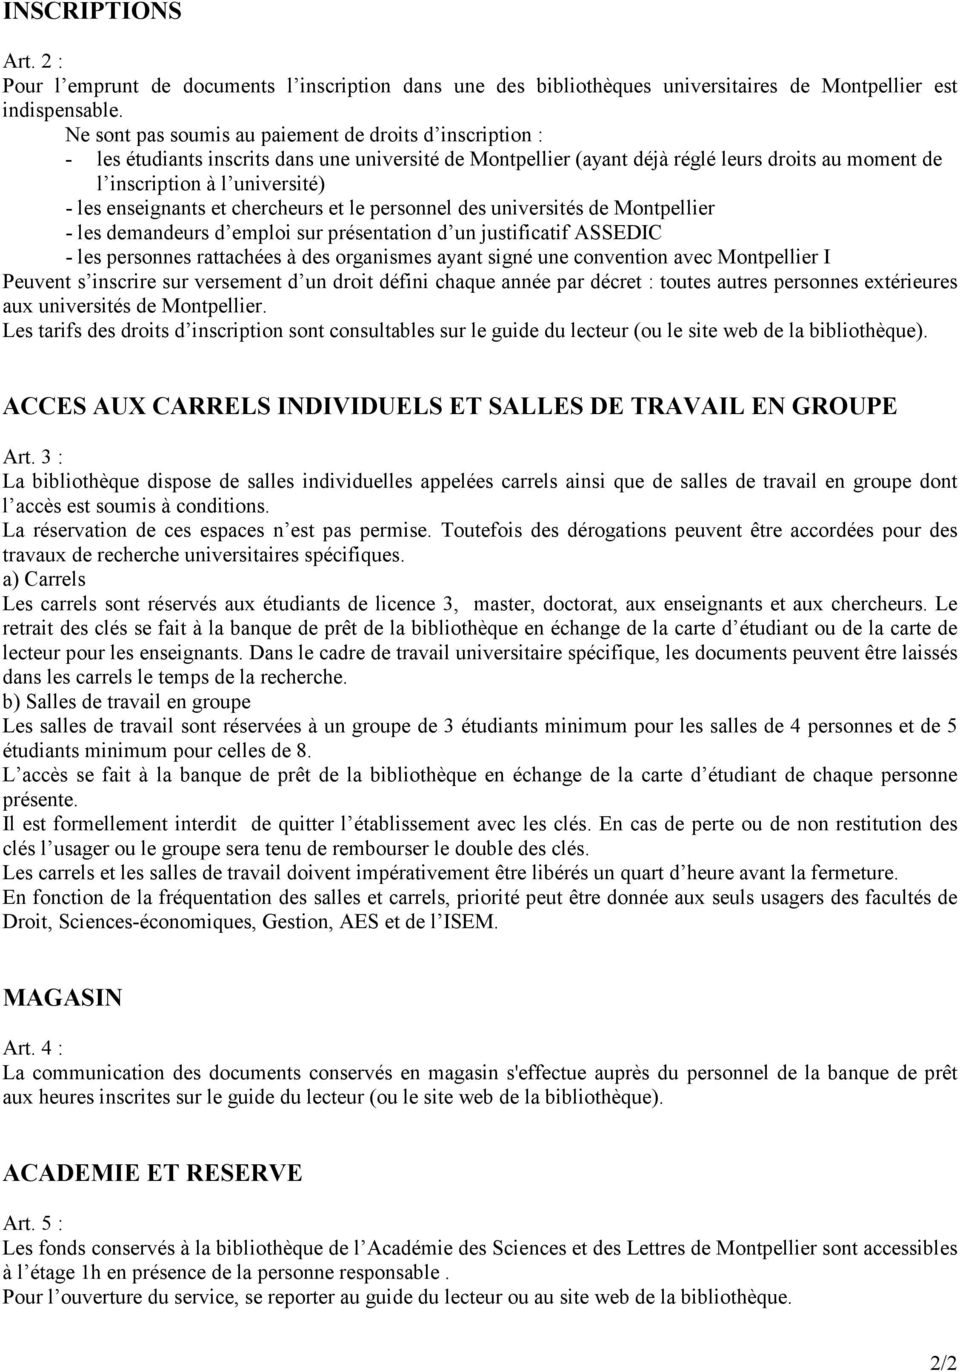 enseignants et chercheurs et le personnel des universités de Montpellier - les demandeurs d emploi sur présentation d un justificatif ASSEDIC - les personnes rattachées à des organismes ayant signé